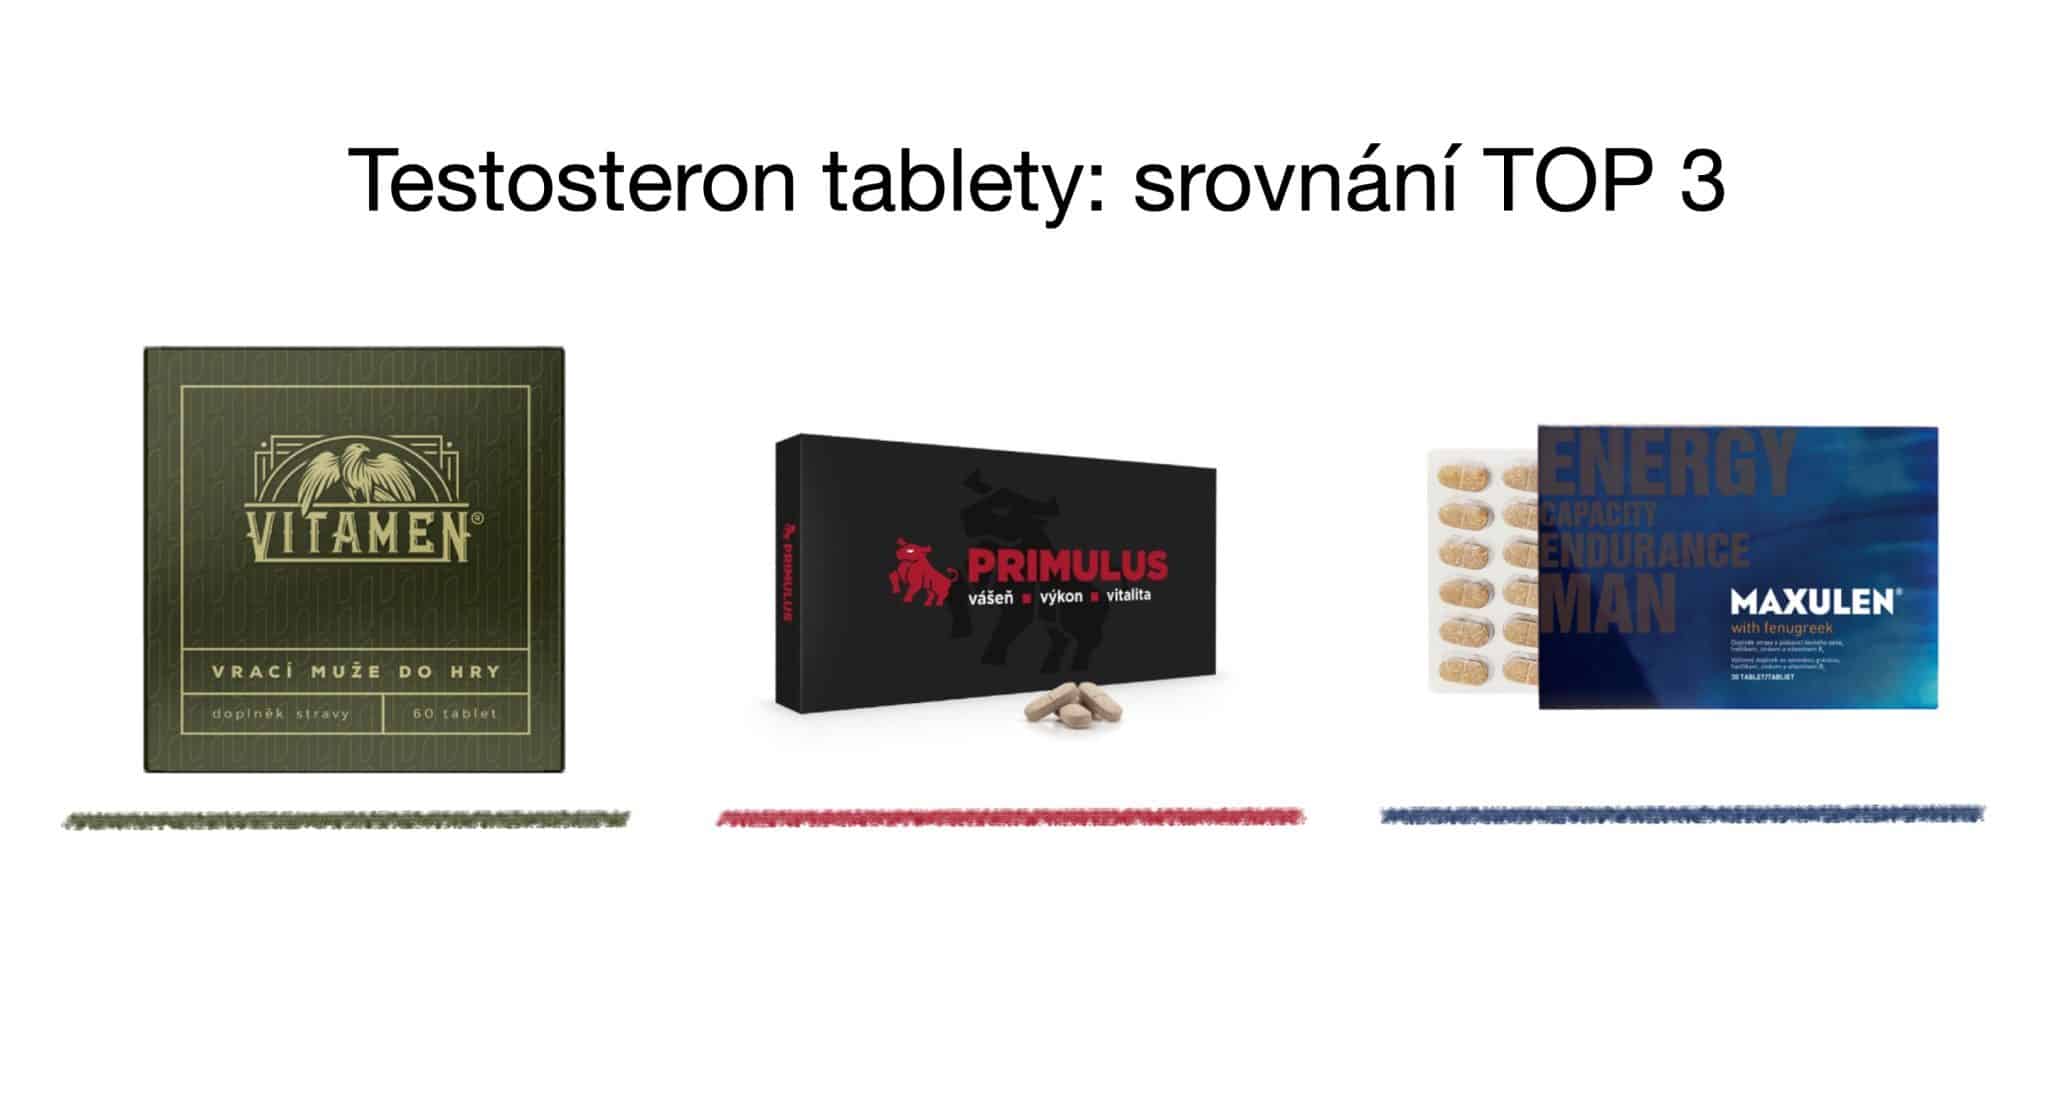 Testosteron tablety TOP 3 srovnání – vitamíny pro muže [recenze] 7